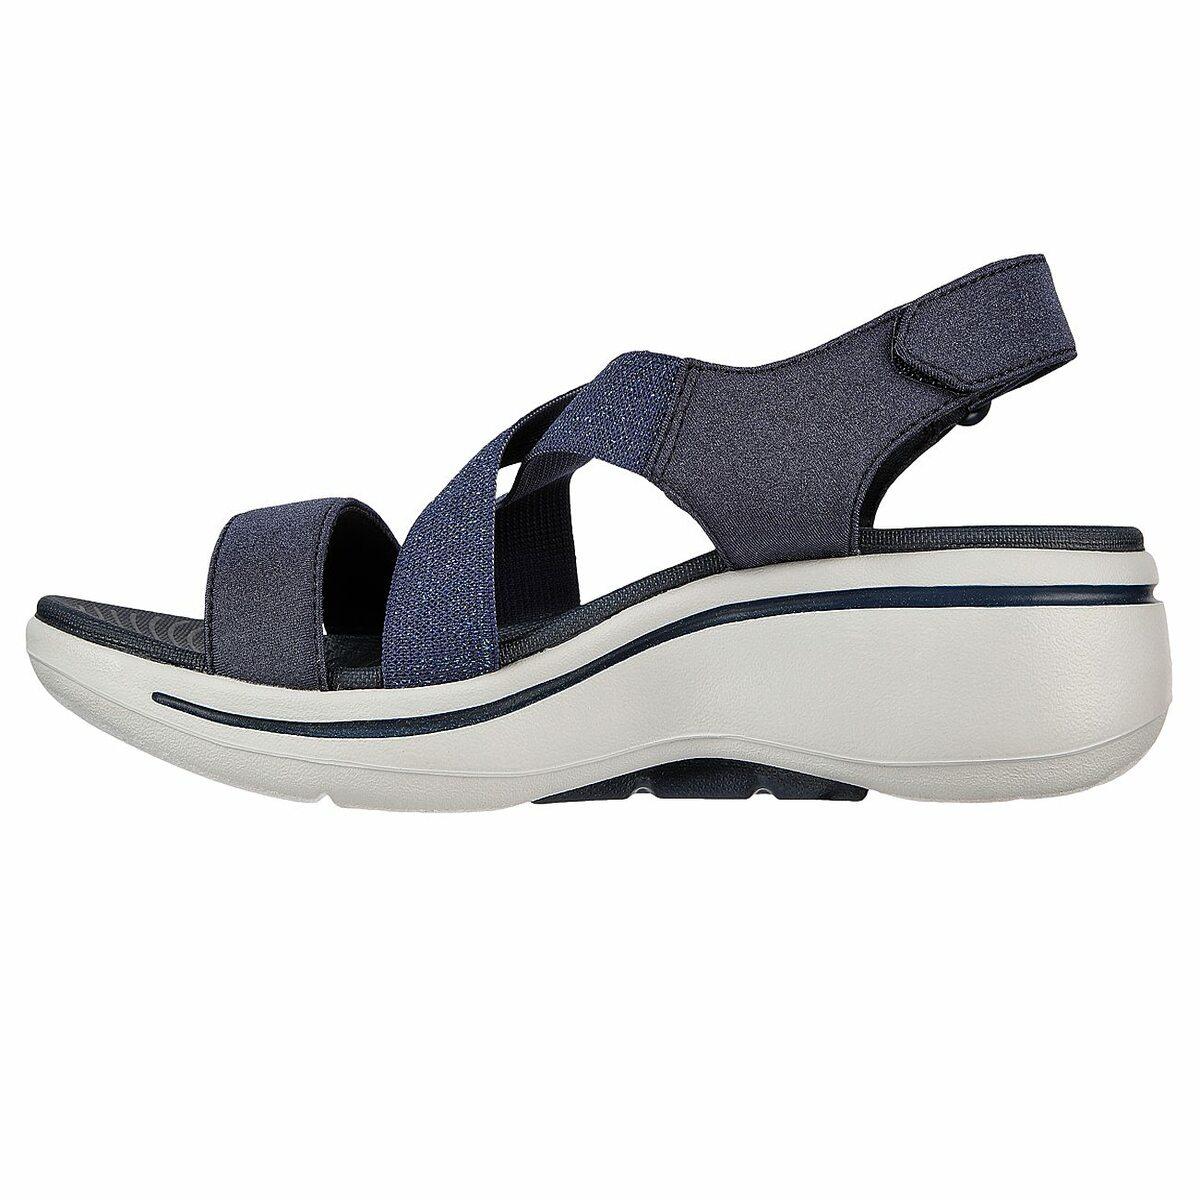 Skechers Women Navy Casual Sandals SKU: 239-140226-17-6